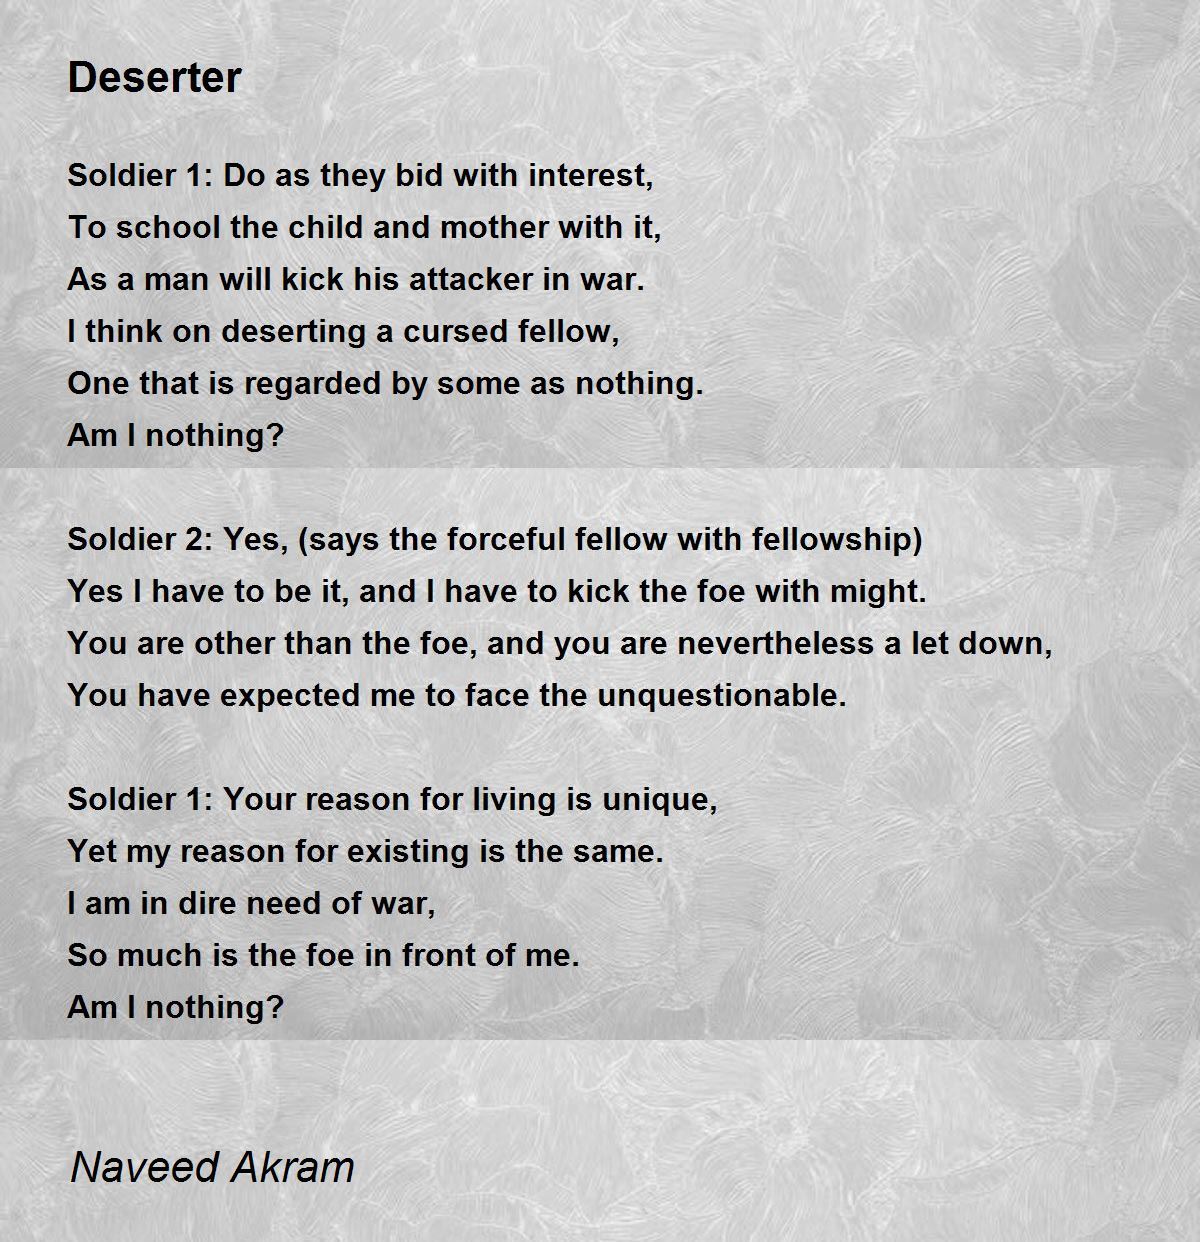 the deserter poem